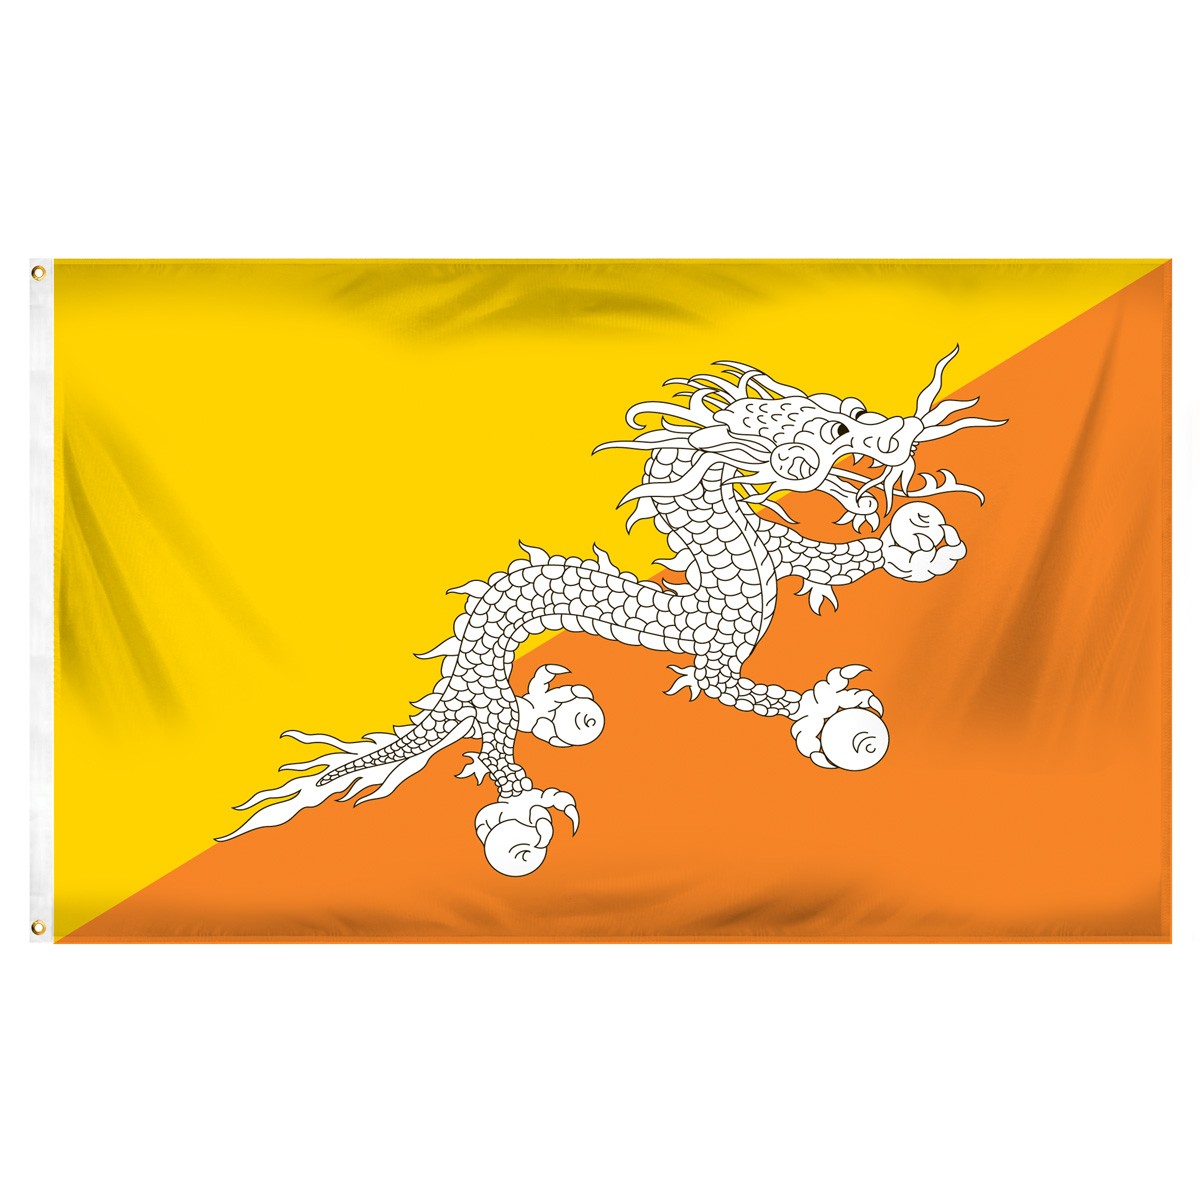 Bhutan Flags and Pennants